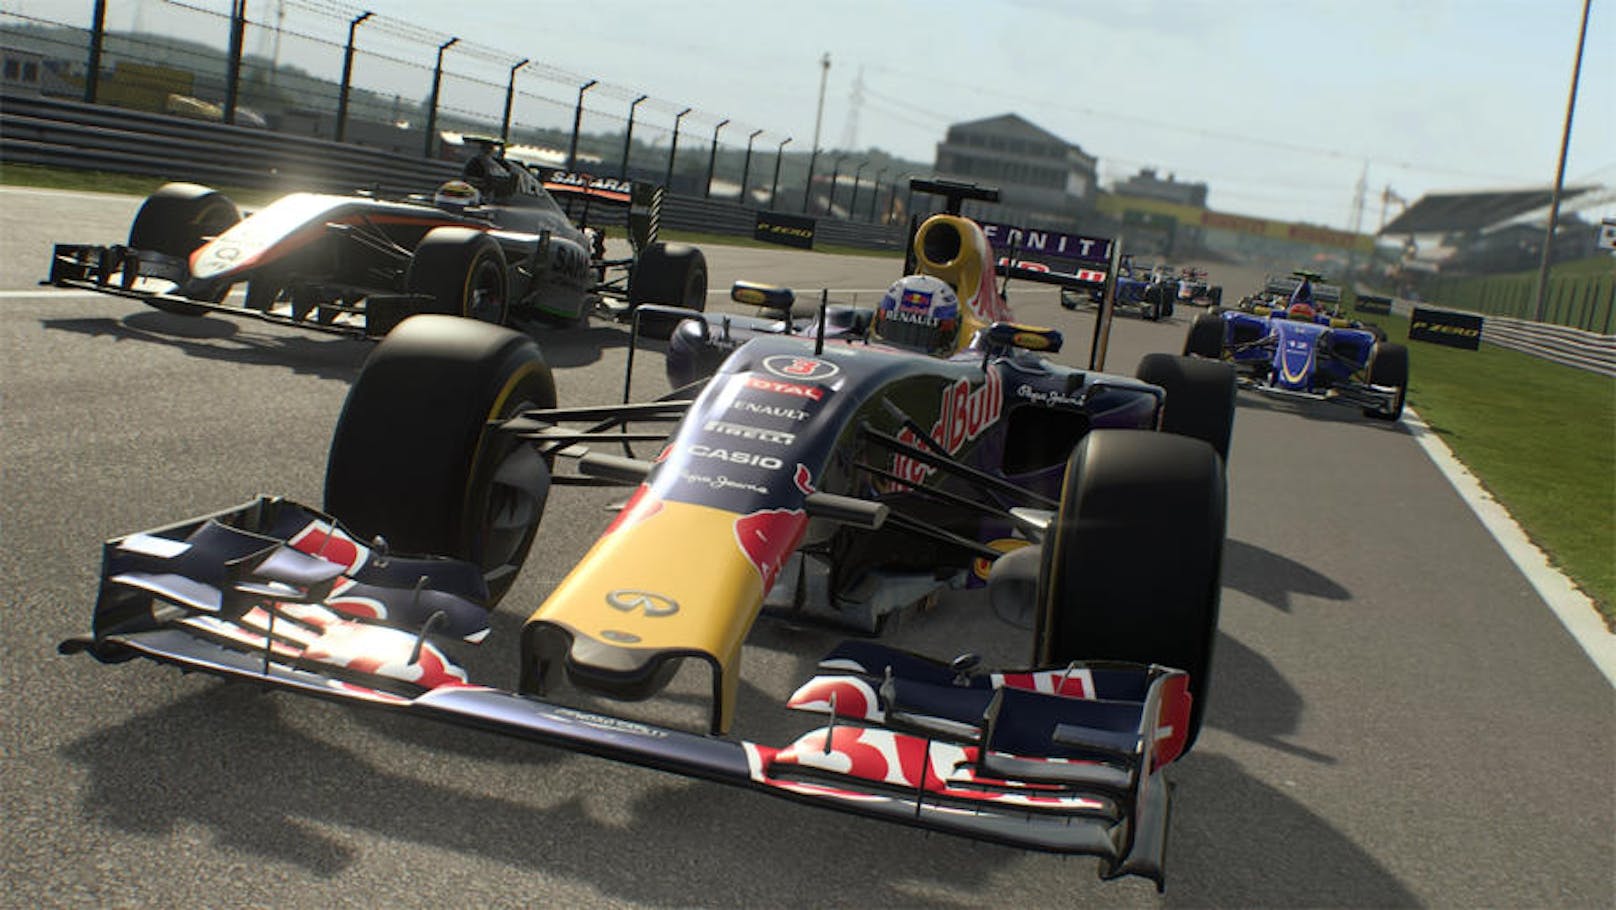 Graphisch ist F1 2015 ein absoluter Hingucker. Die Autos sehen sehr realistisch aus, die Strecken sind sehr detailverliebt umgesetzt.